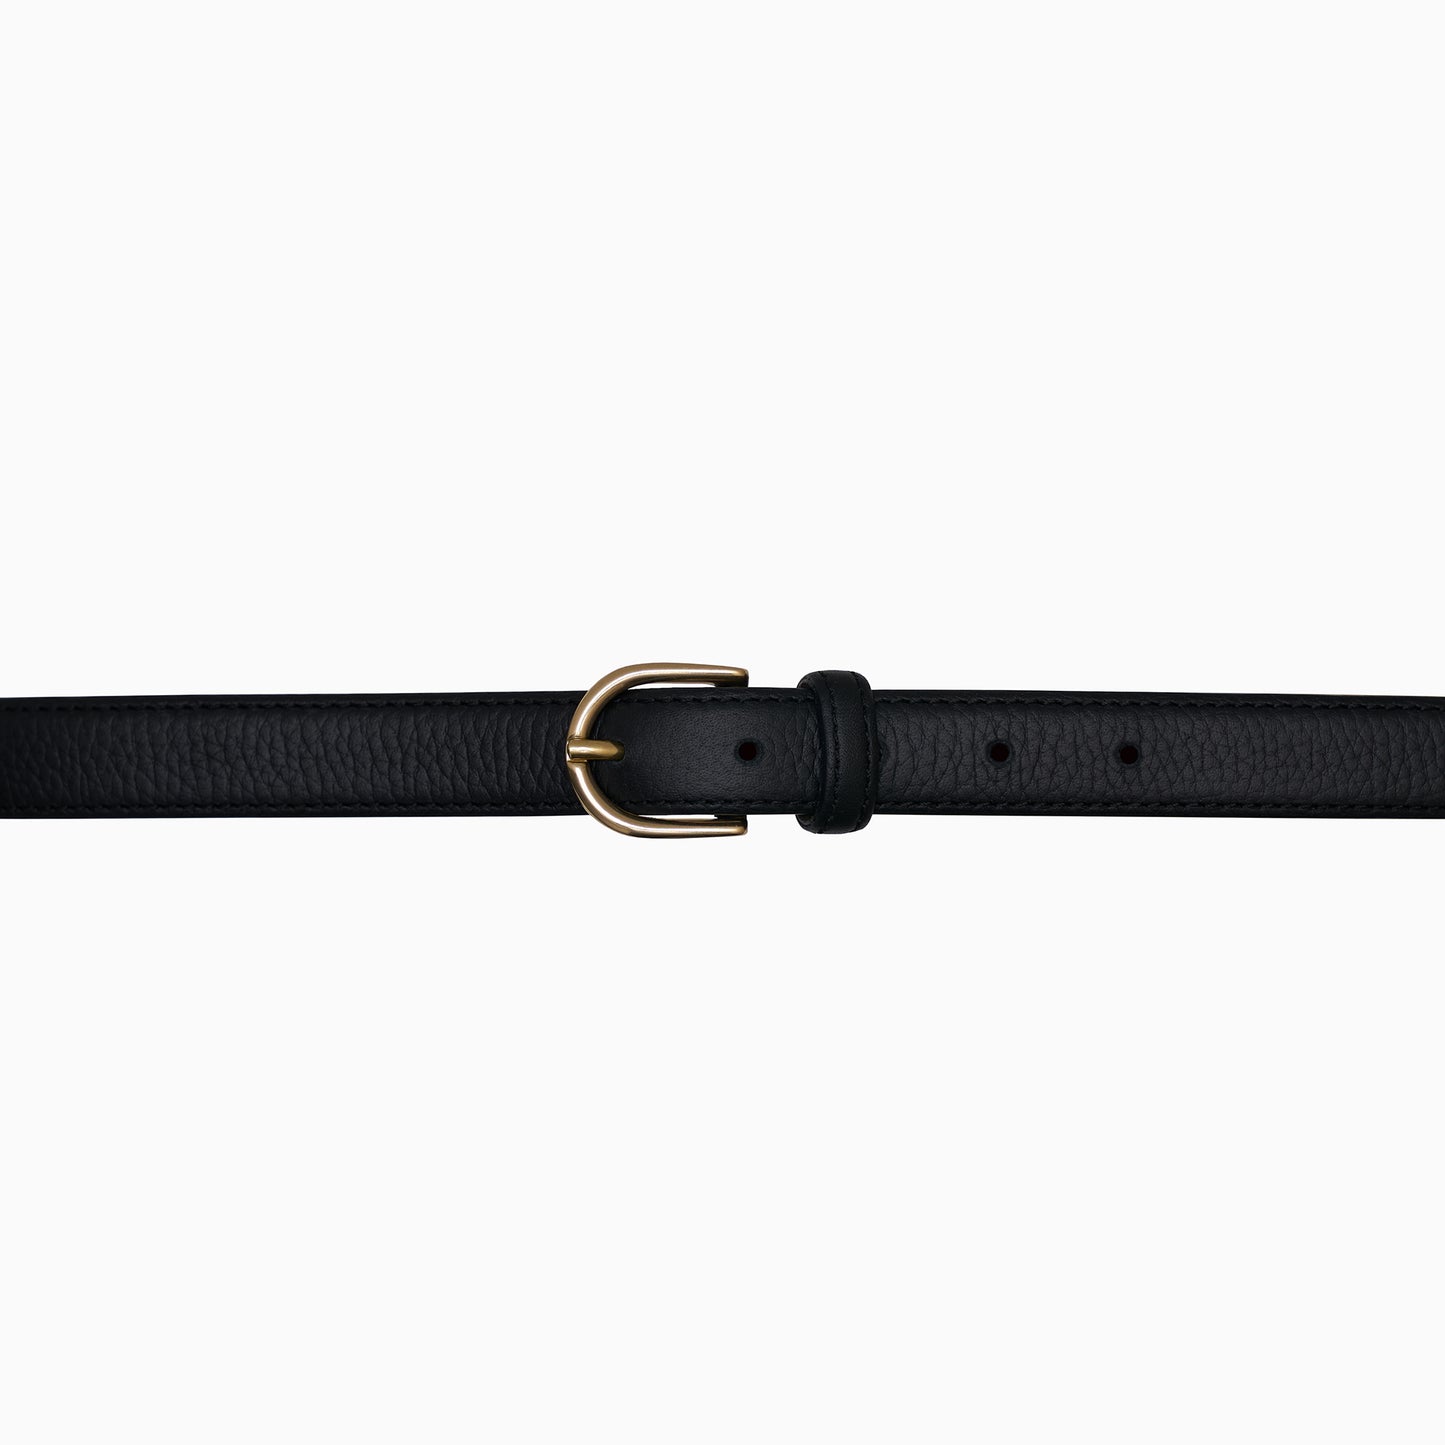 Black Pebble Leather Belt 1"